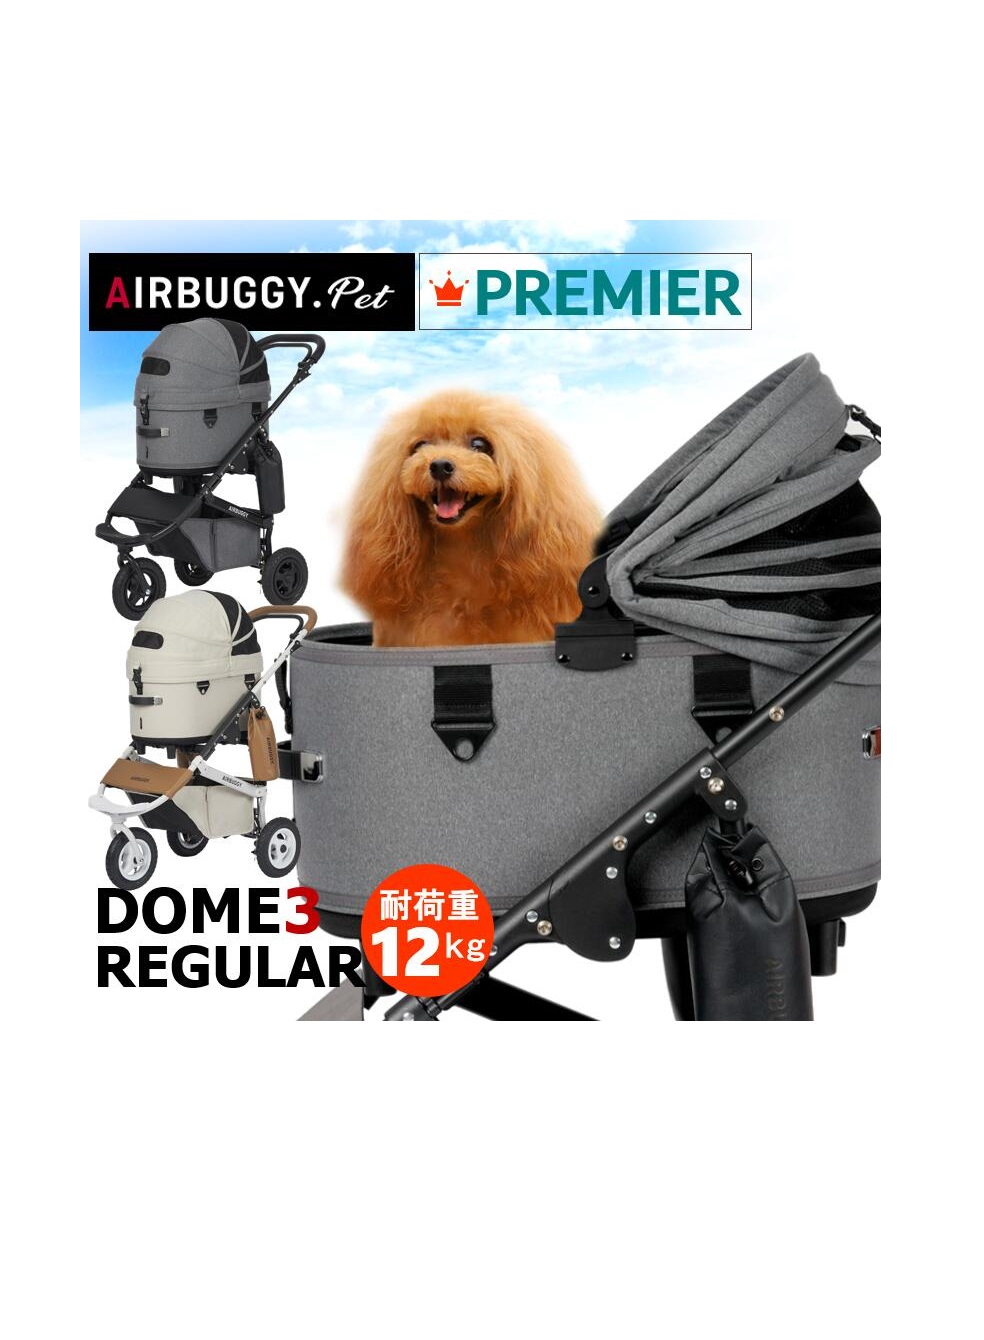 エアバギー 犬 ペット レギュラー ドーム３ プレミア ブレーキモデル AIRBUGGY DOME3 REGULAR ペットカート 正規保証 本体アイキャッチ画像